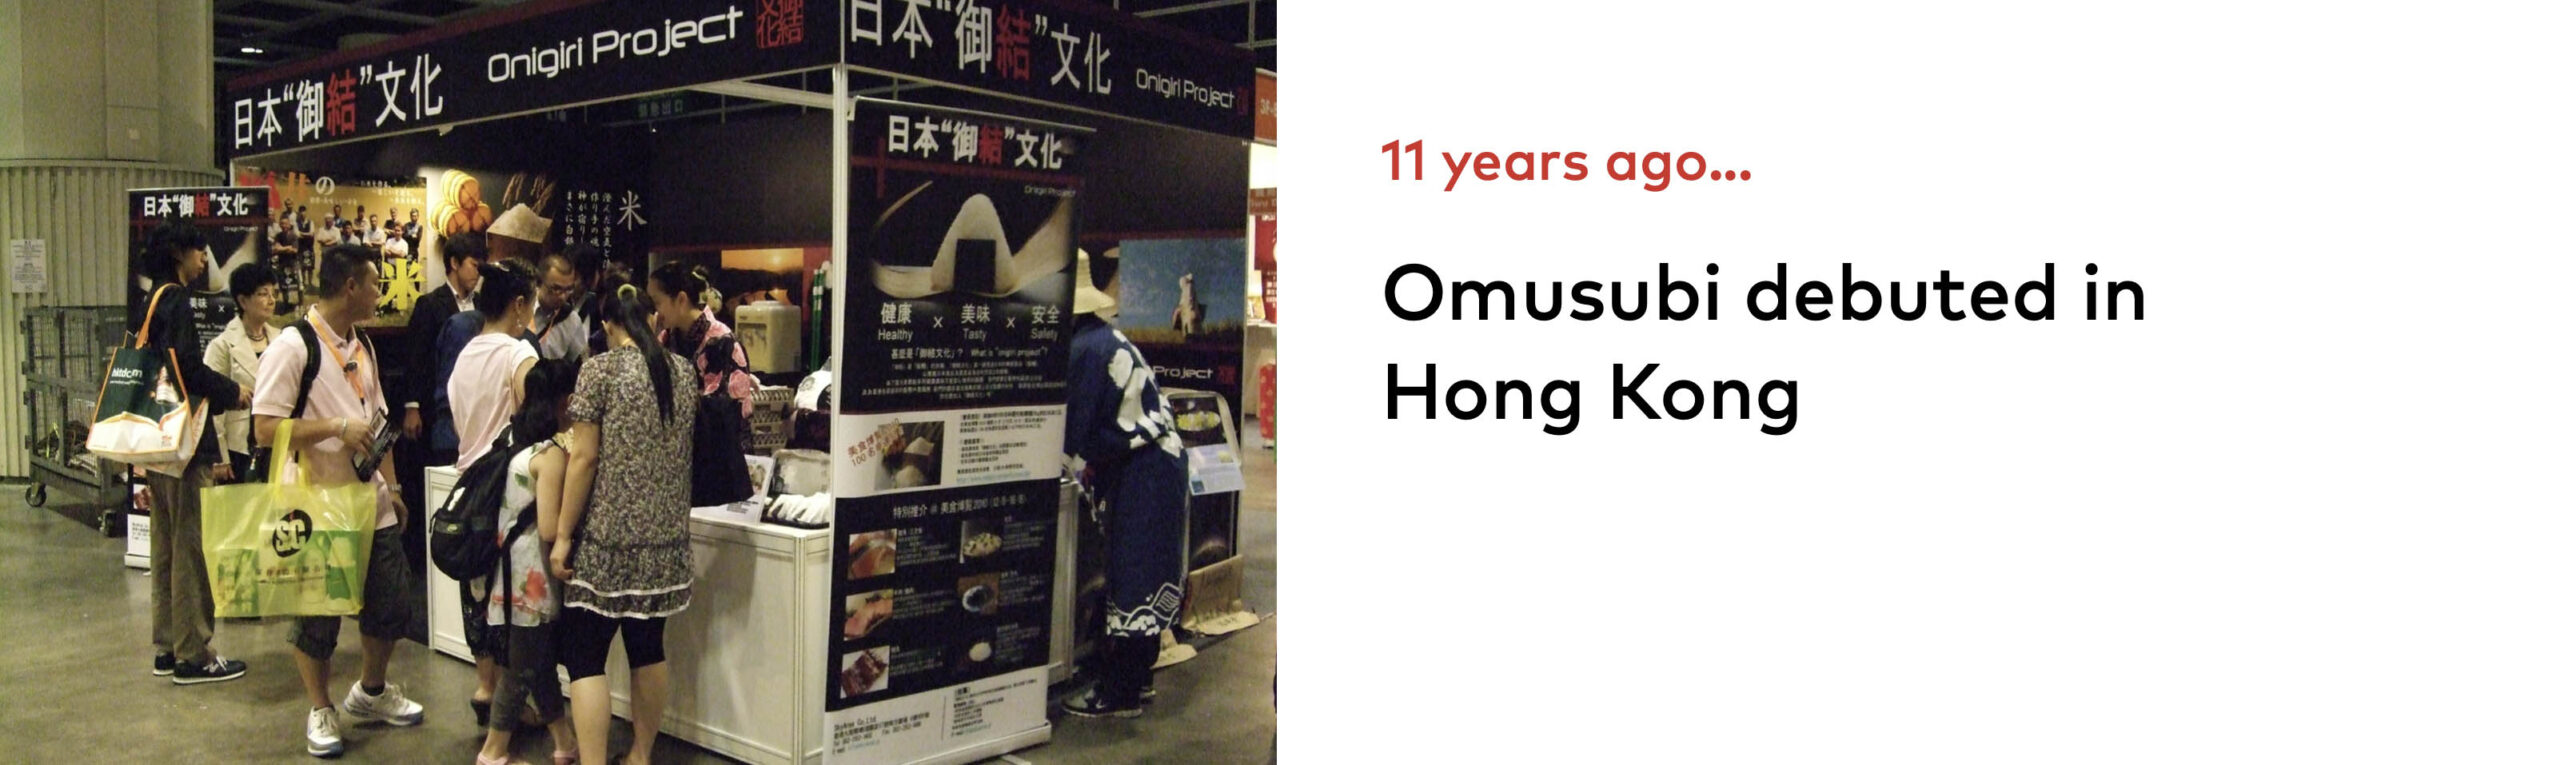 我們的御結在香港美食博覽2010首次亮相